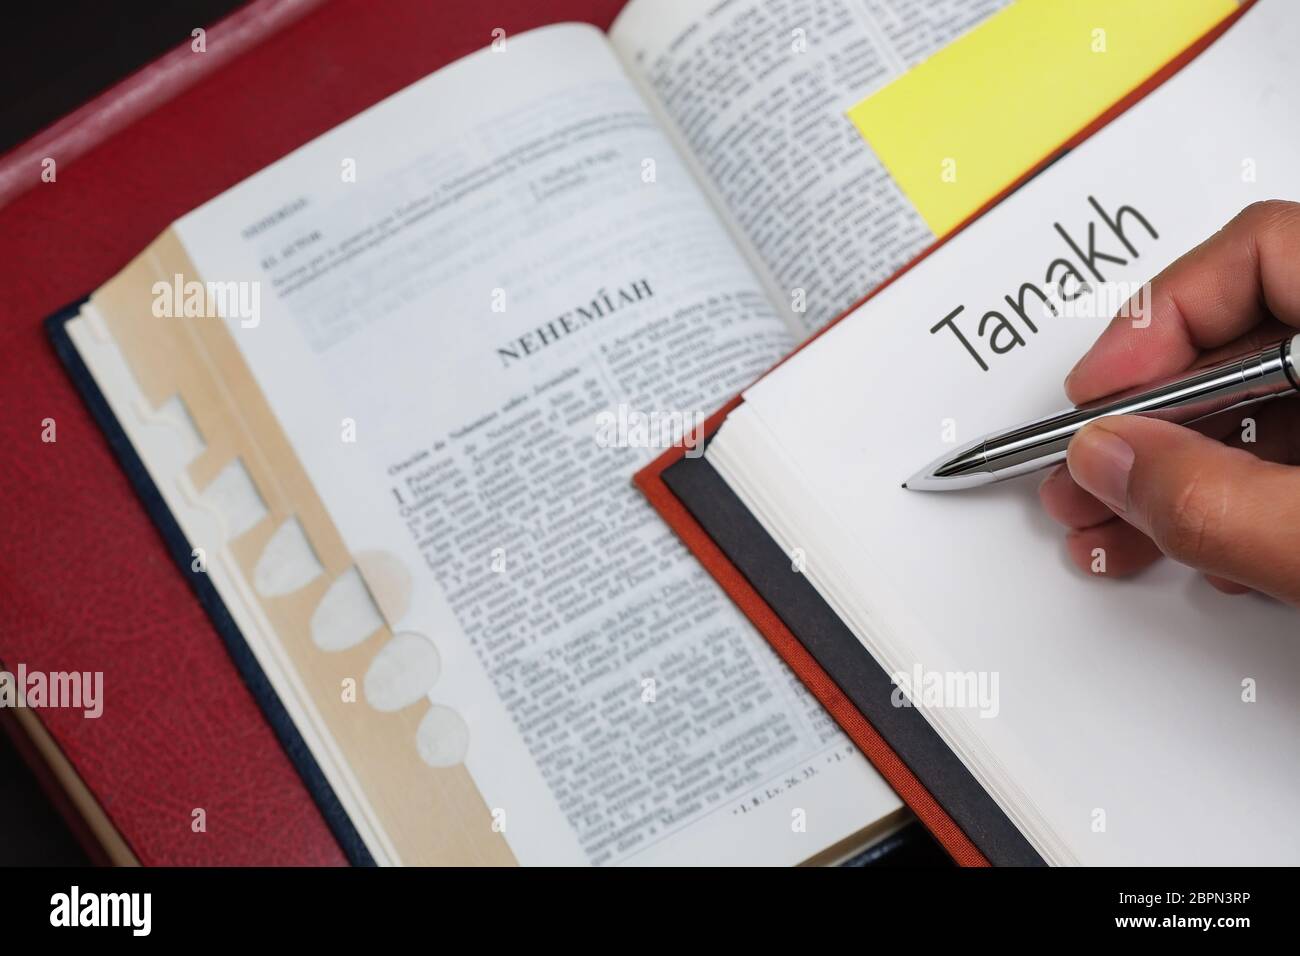 Un estudiante de Tanakh escribiendo en un cuaderno con una biblia abierta al libro del profeta Nehemías. Foto de stock